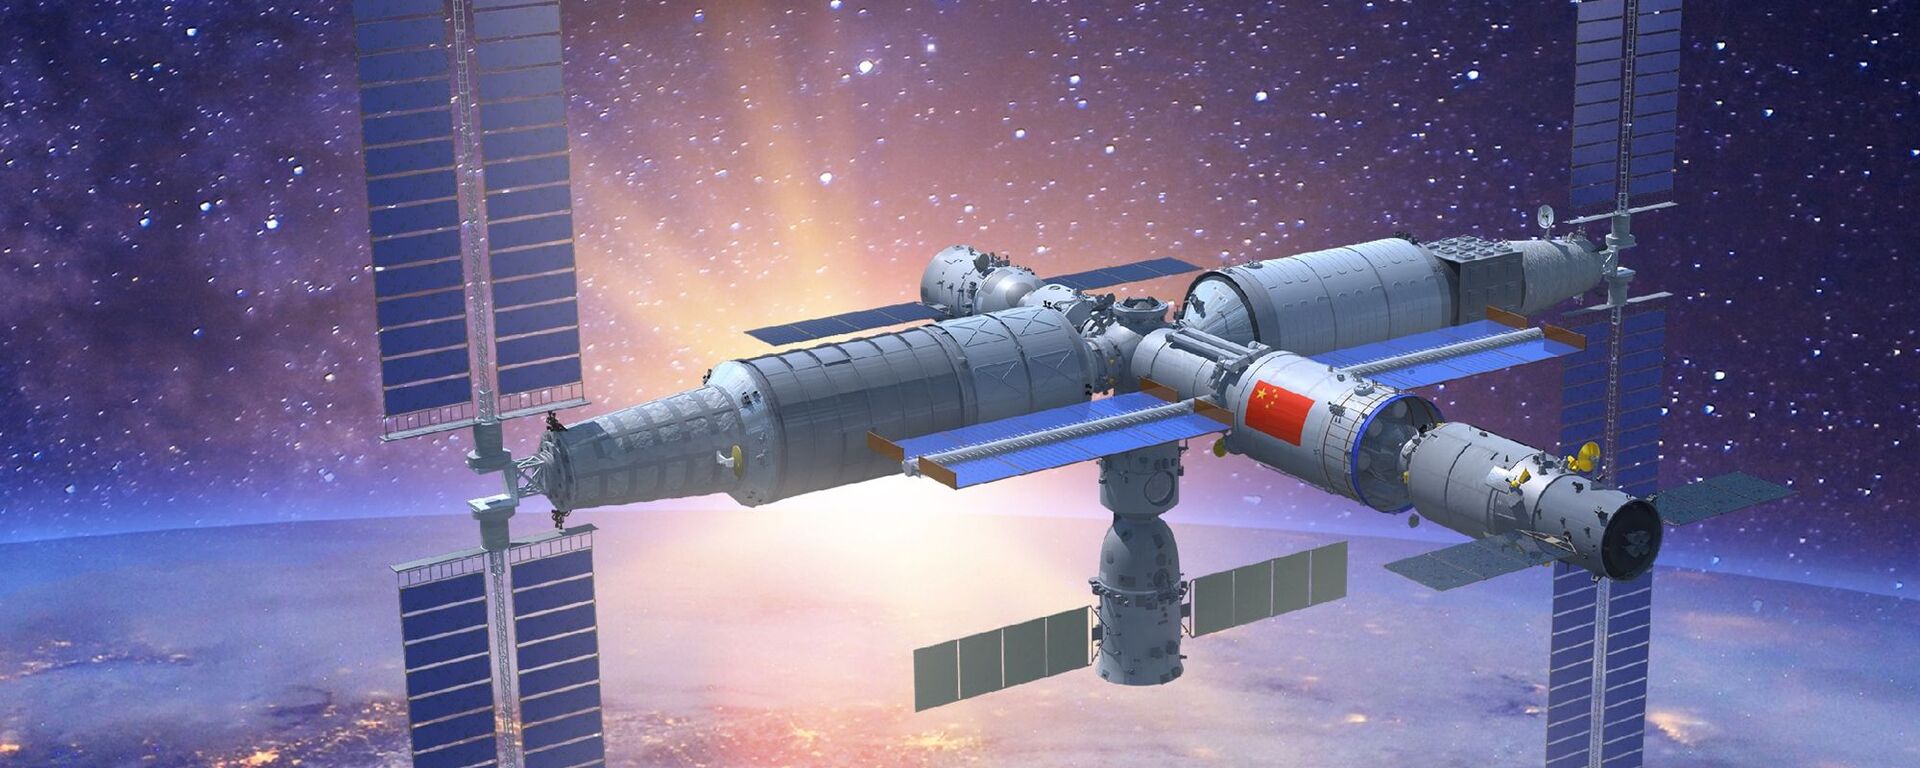 Representação em 3D da estação espacial Tiangong com todos os módulos instalados - Sputnik Brasil, 1920, 14.06.2022